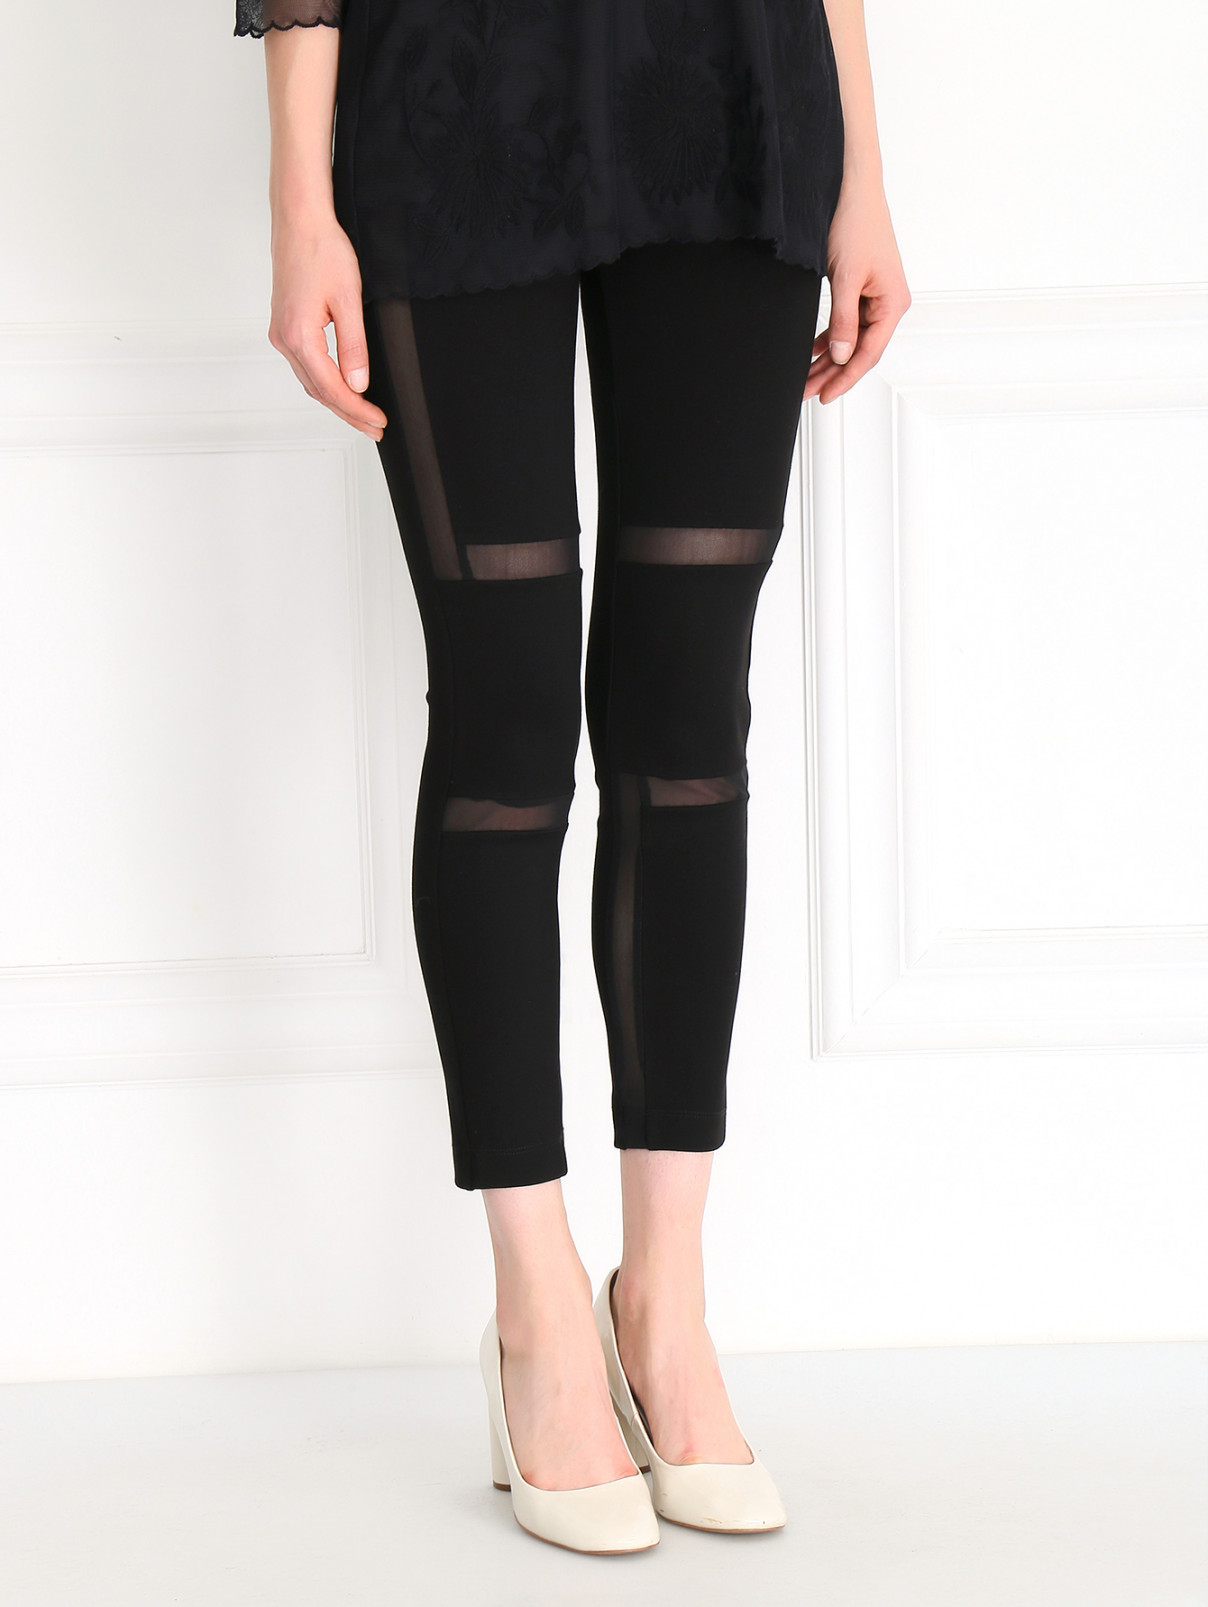 Трикотажные брюки с прозрачными вставками Kira Plastinina  –  Модель Верх-Низ  – Цвет:  Черный